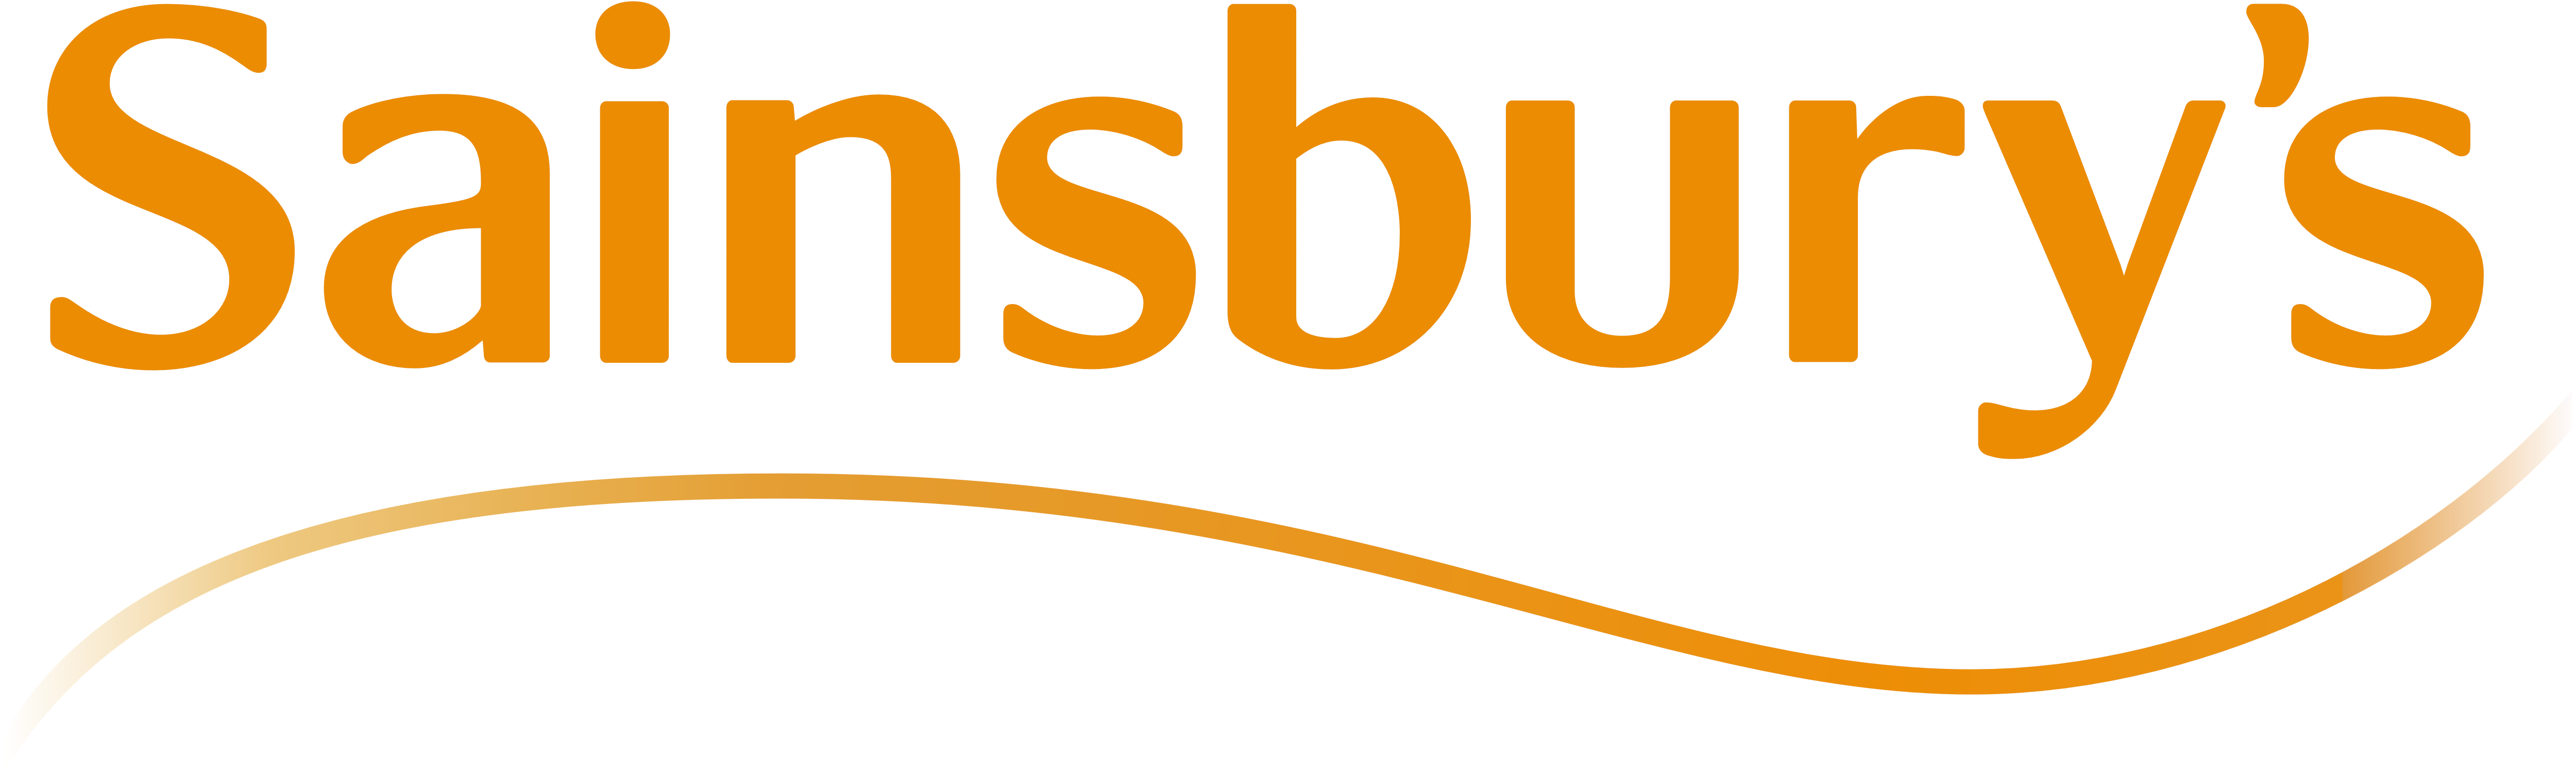 Sainsburys_logo_logotype